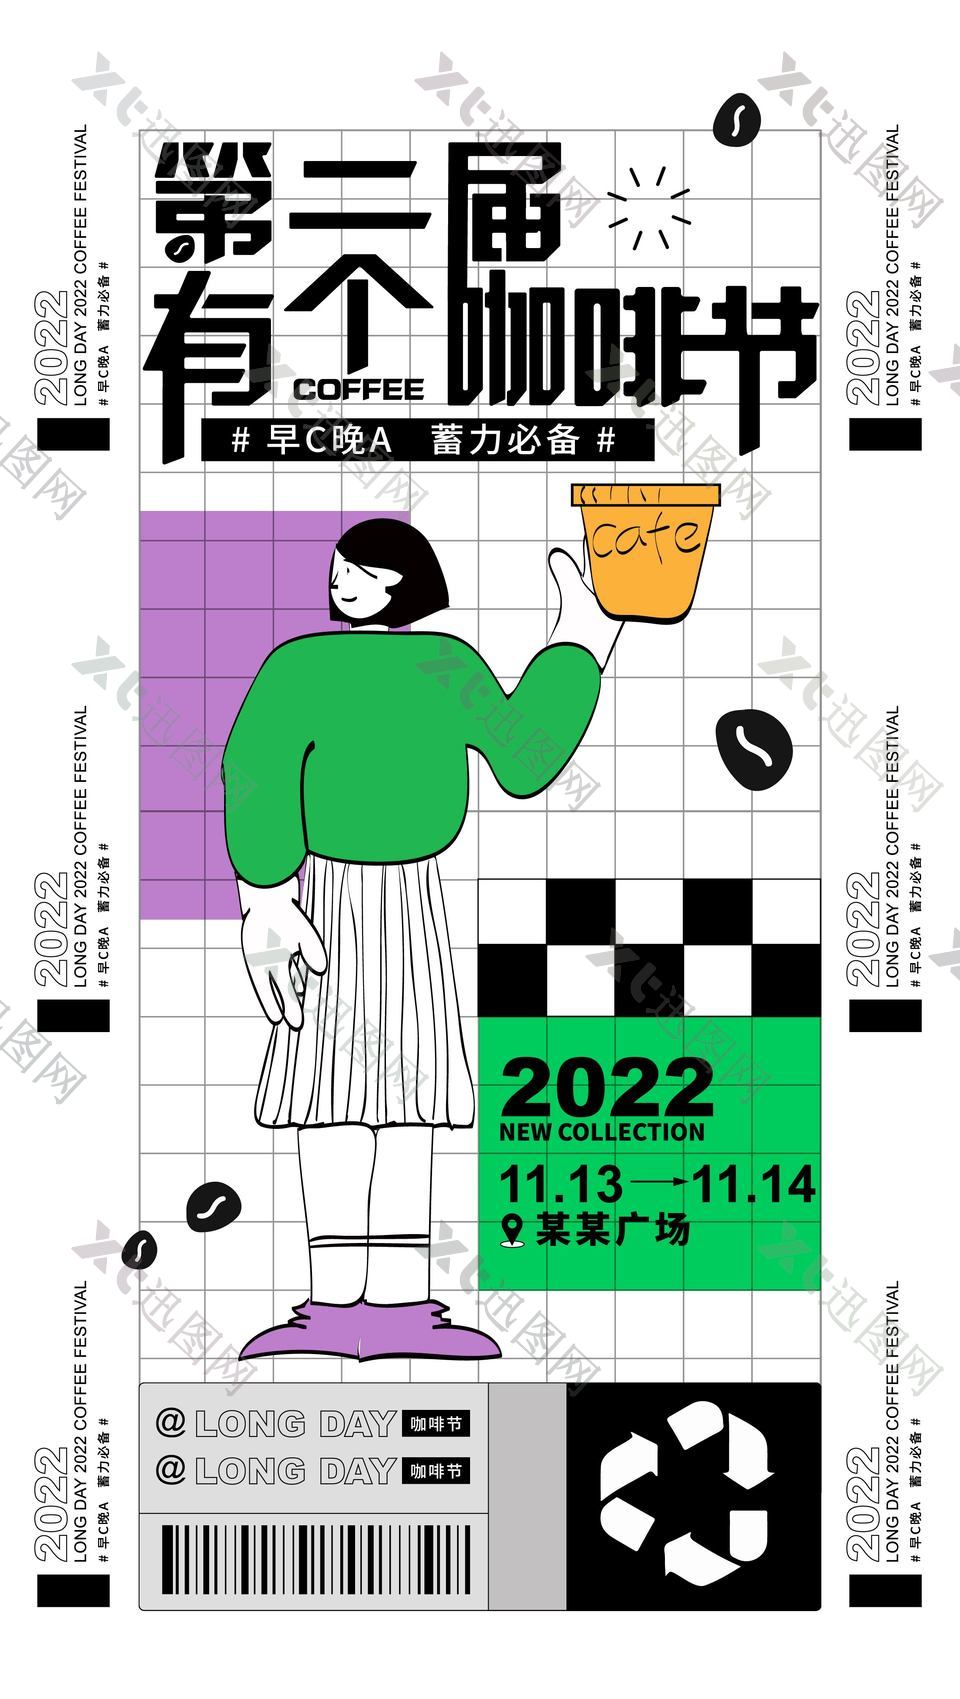 咖啡艺术节活动宣传海报